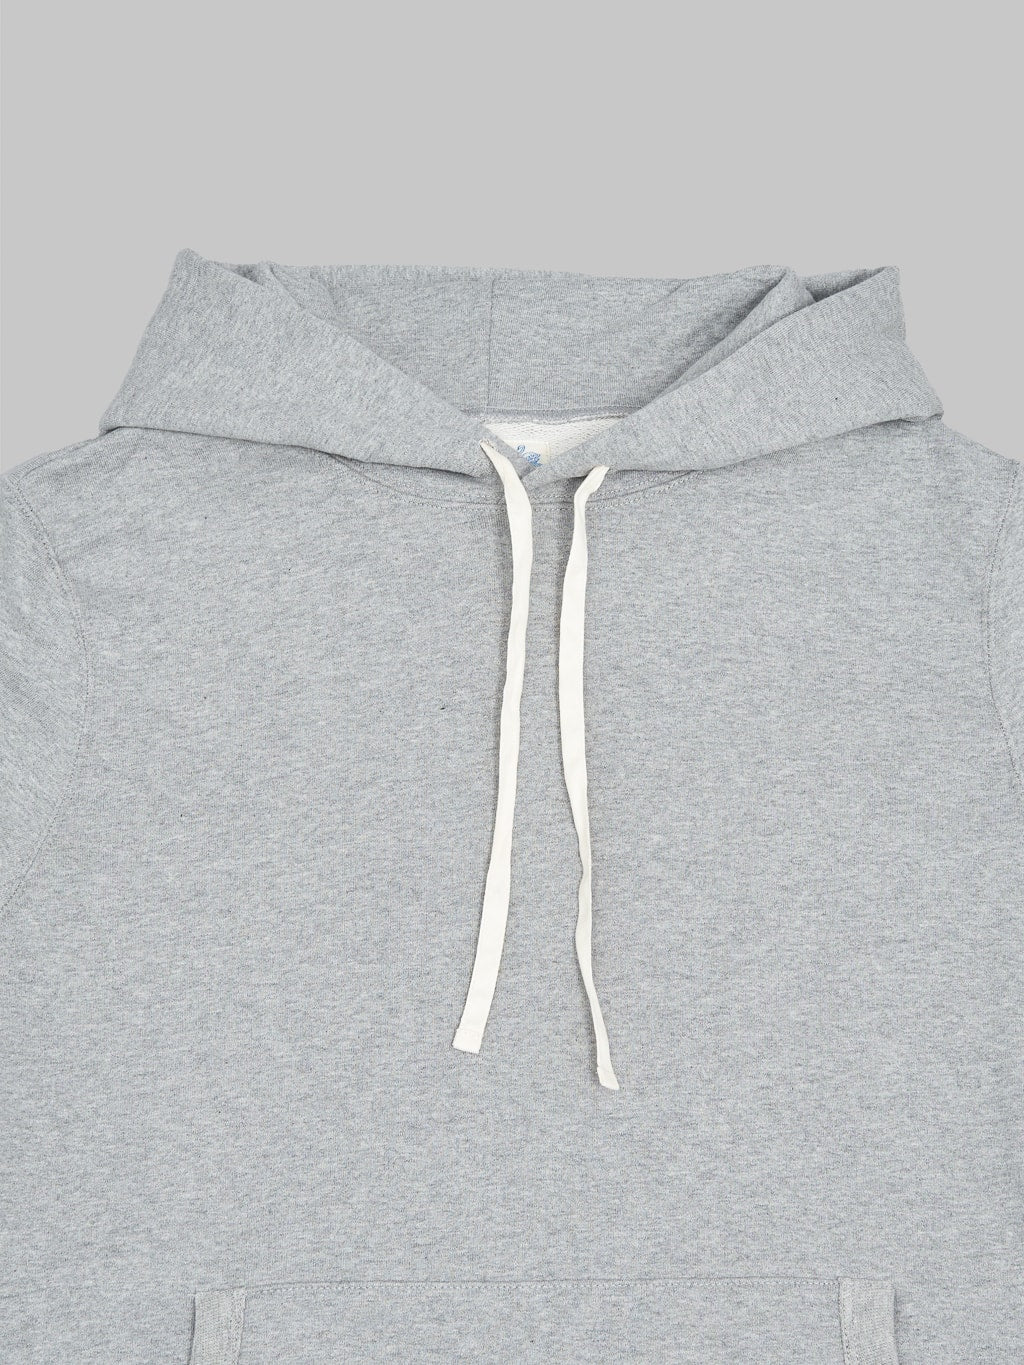 Merz b schwanen loopwheeled hoodie grey front collar view